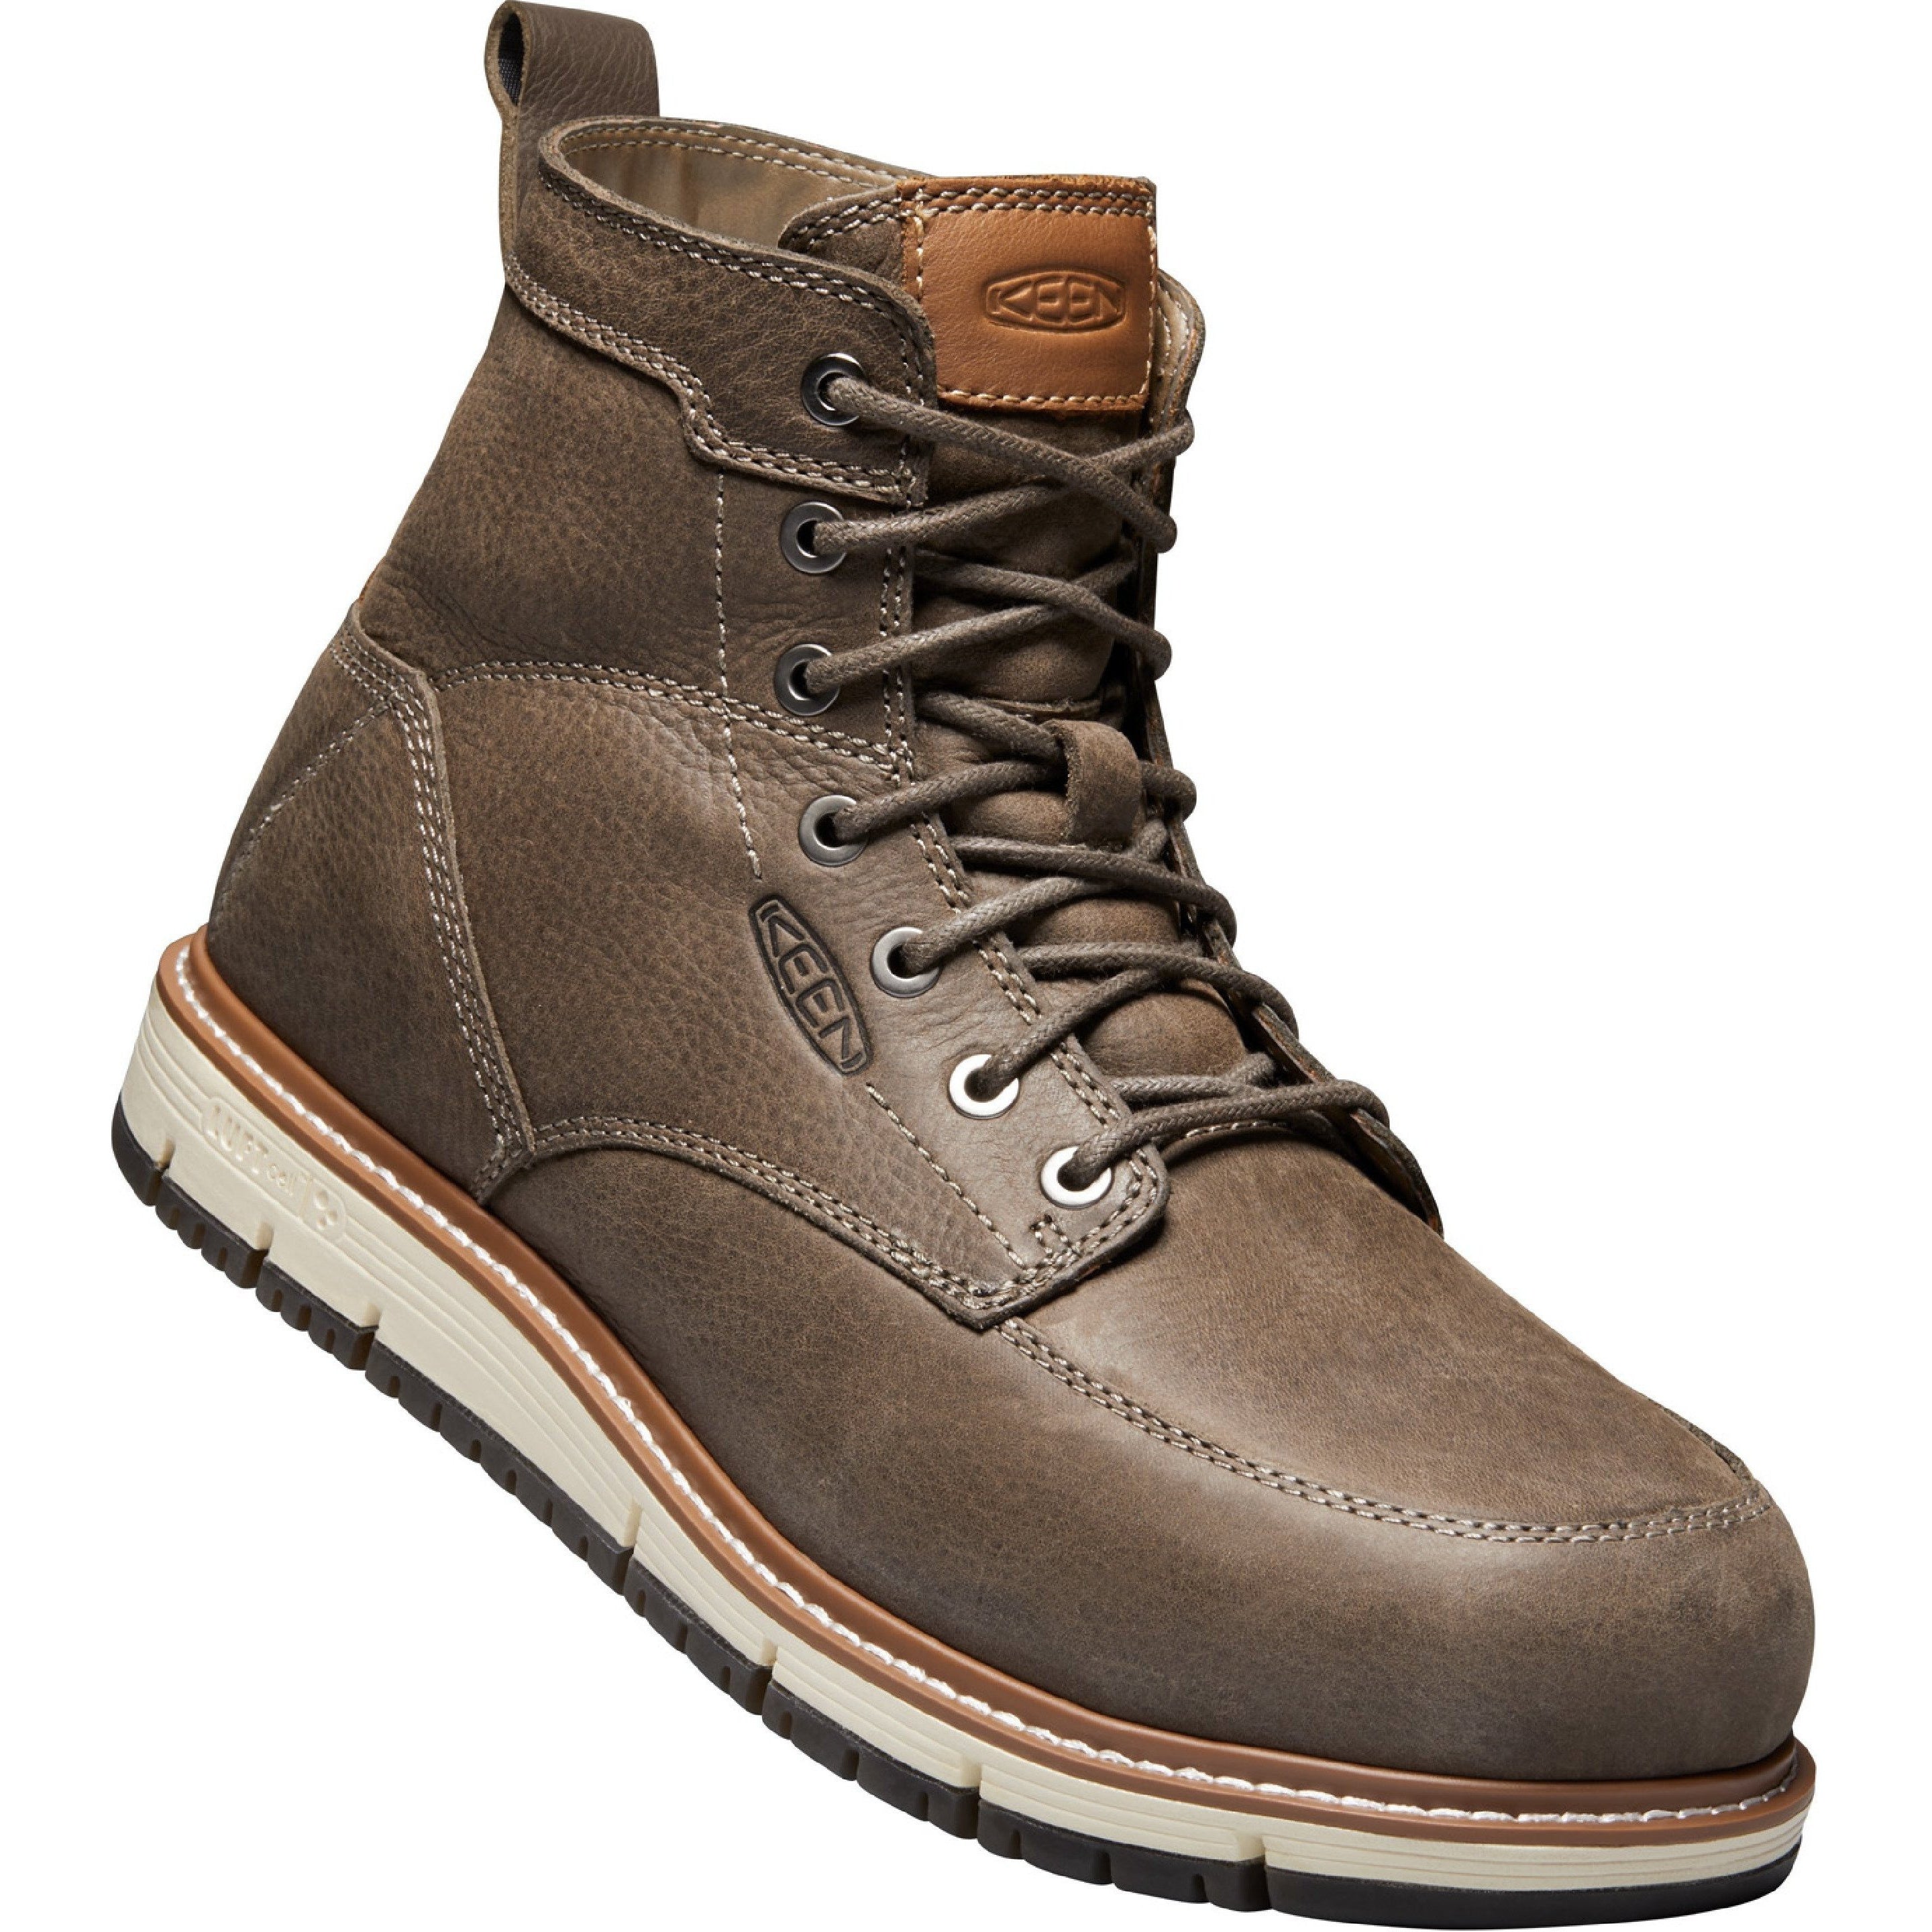 Keen Utility Men's San Jose 6" Aluminum Toe Work Boot Brown 1020057  - Overlook Boots